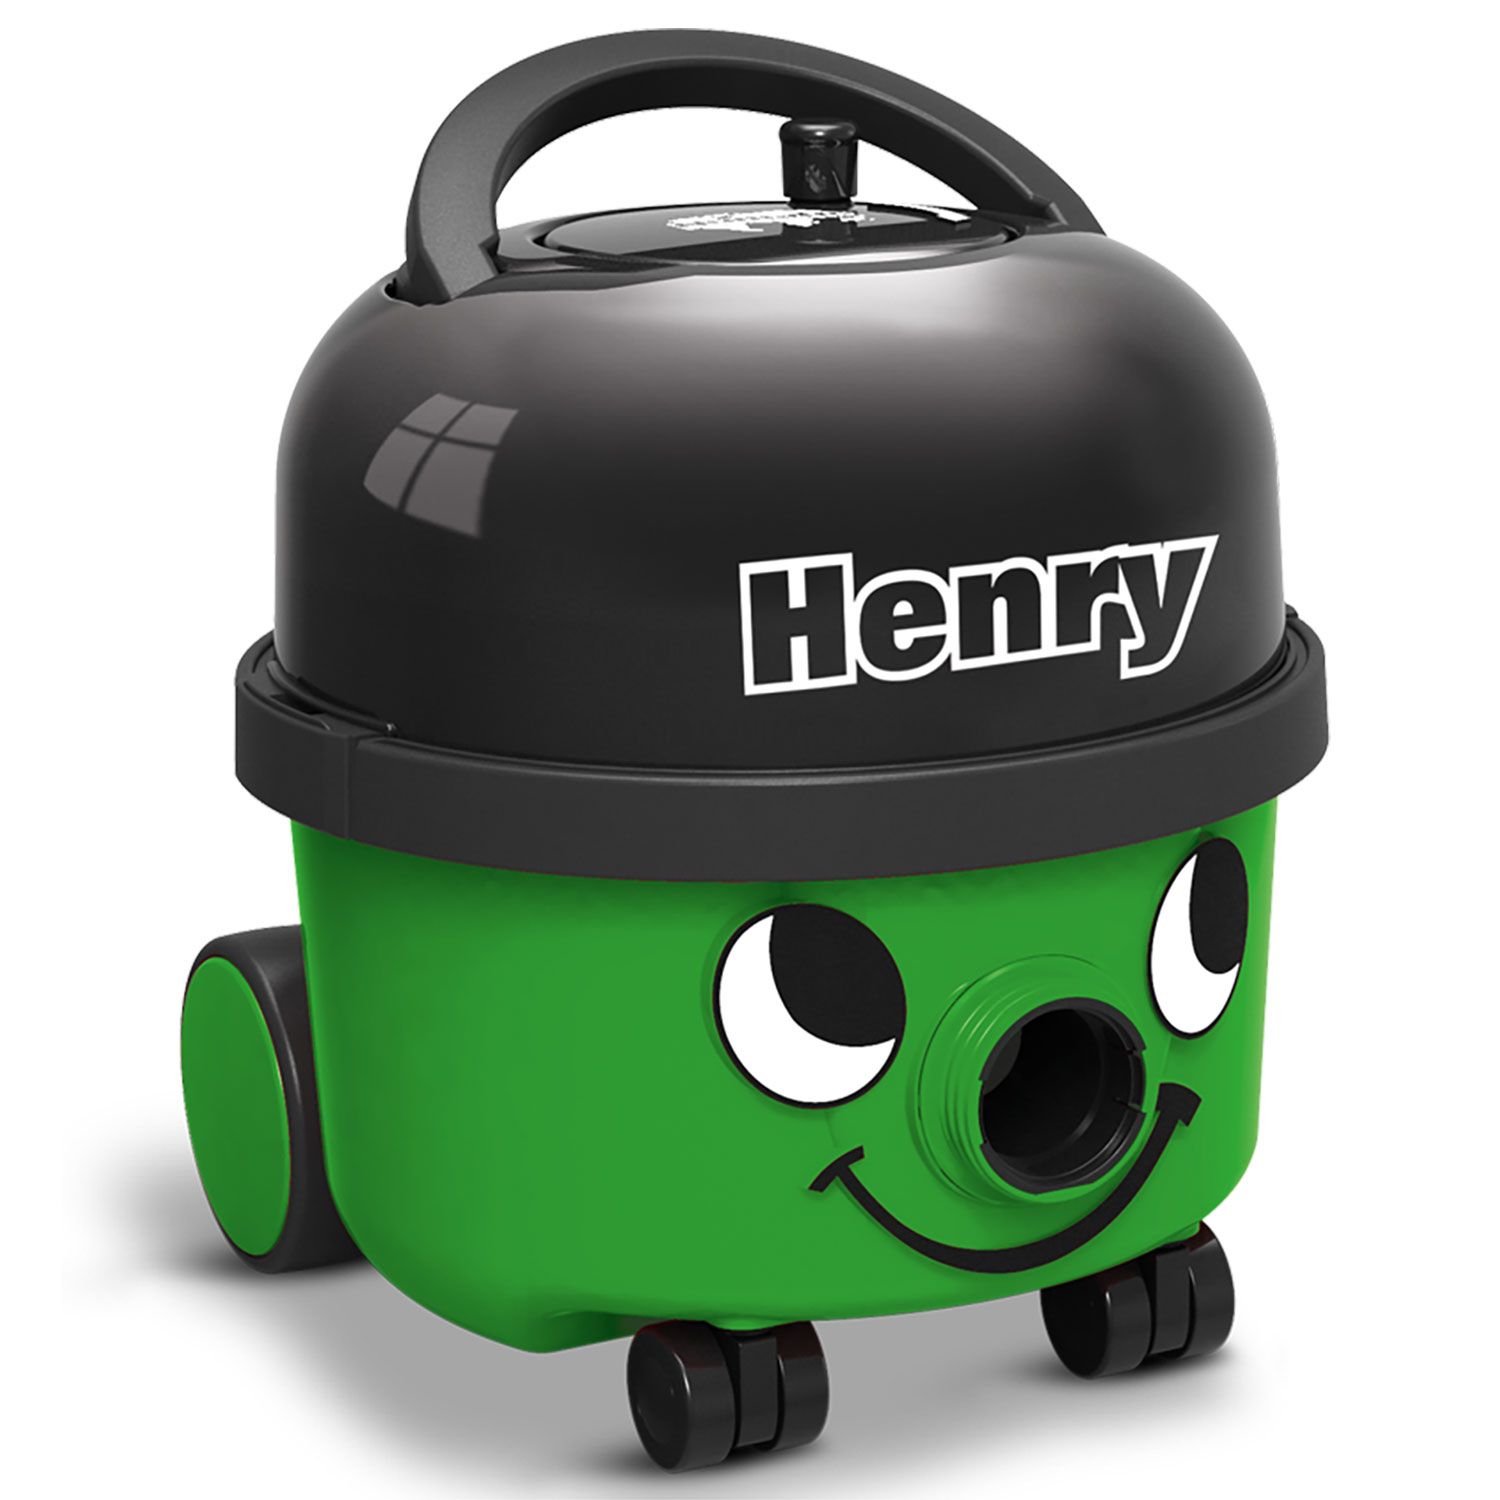 Пылесосы green. Numatic Henry. Henry (Vacuum). Зелёный пылесос Хенри. Пылесос Numatic.